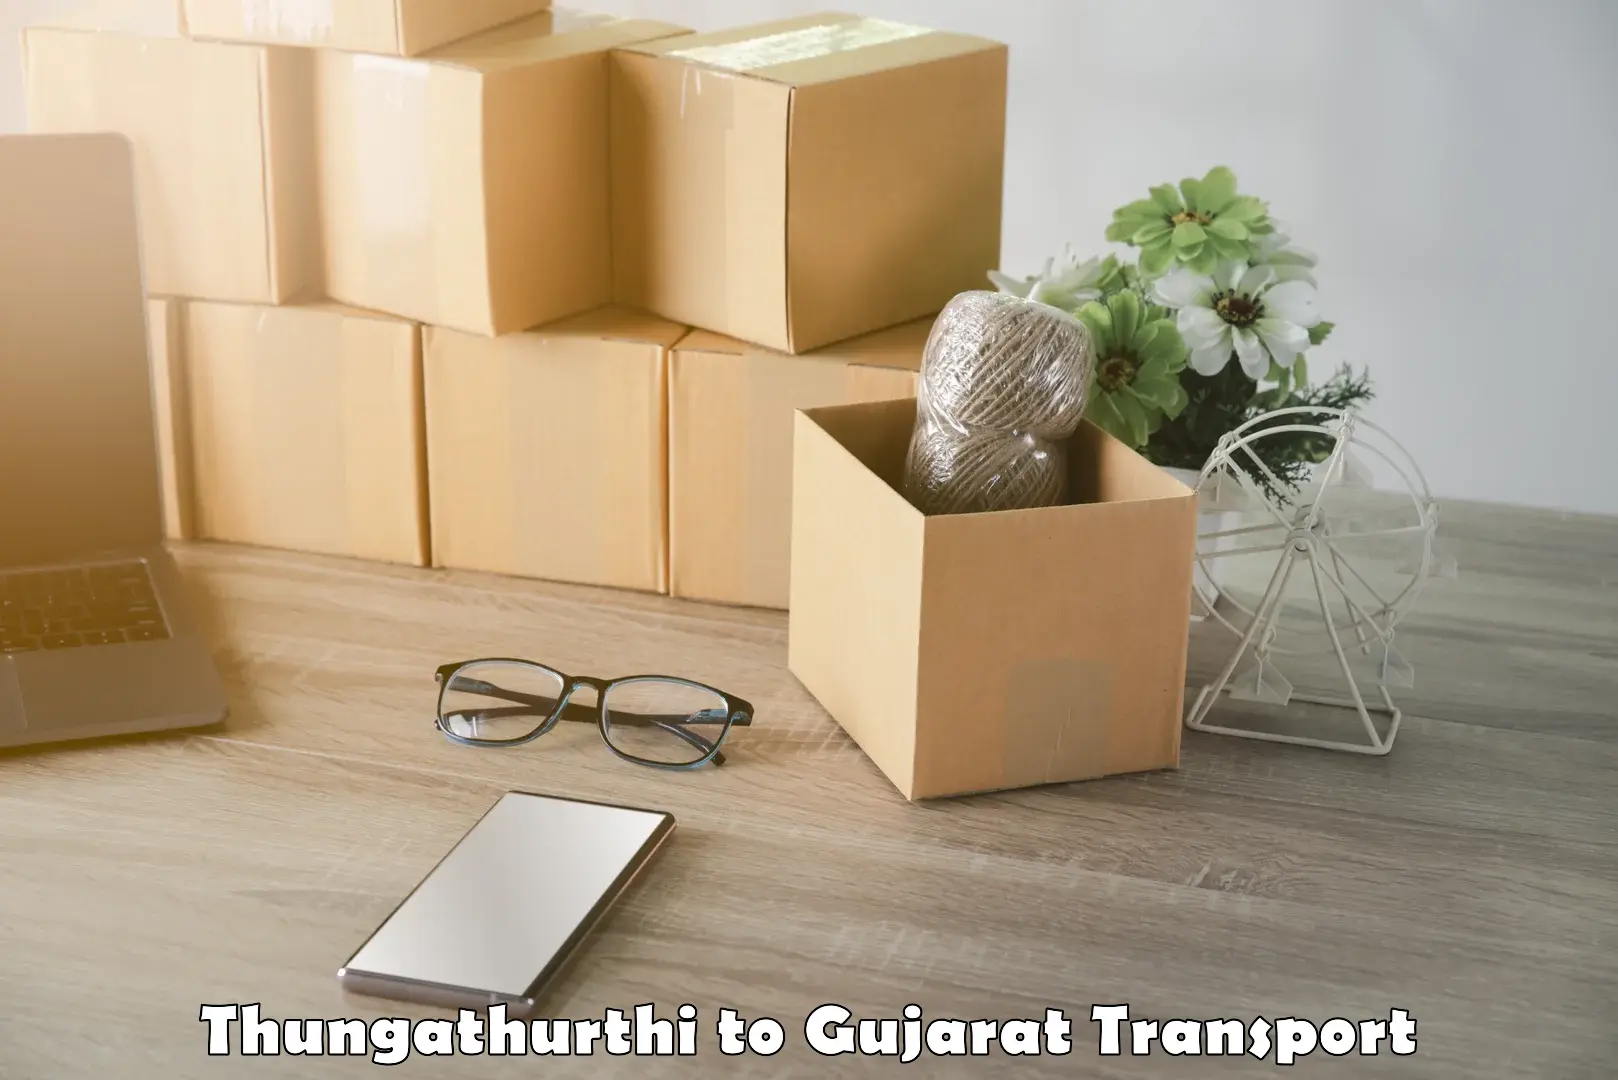 Luggage transport services Thungathurthi to Bhabhar